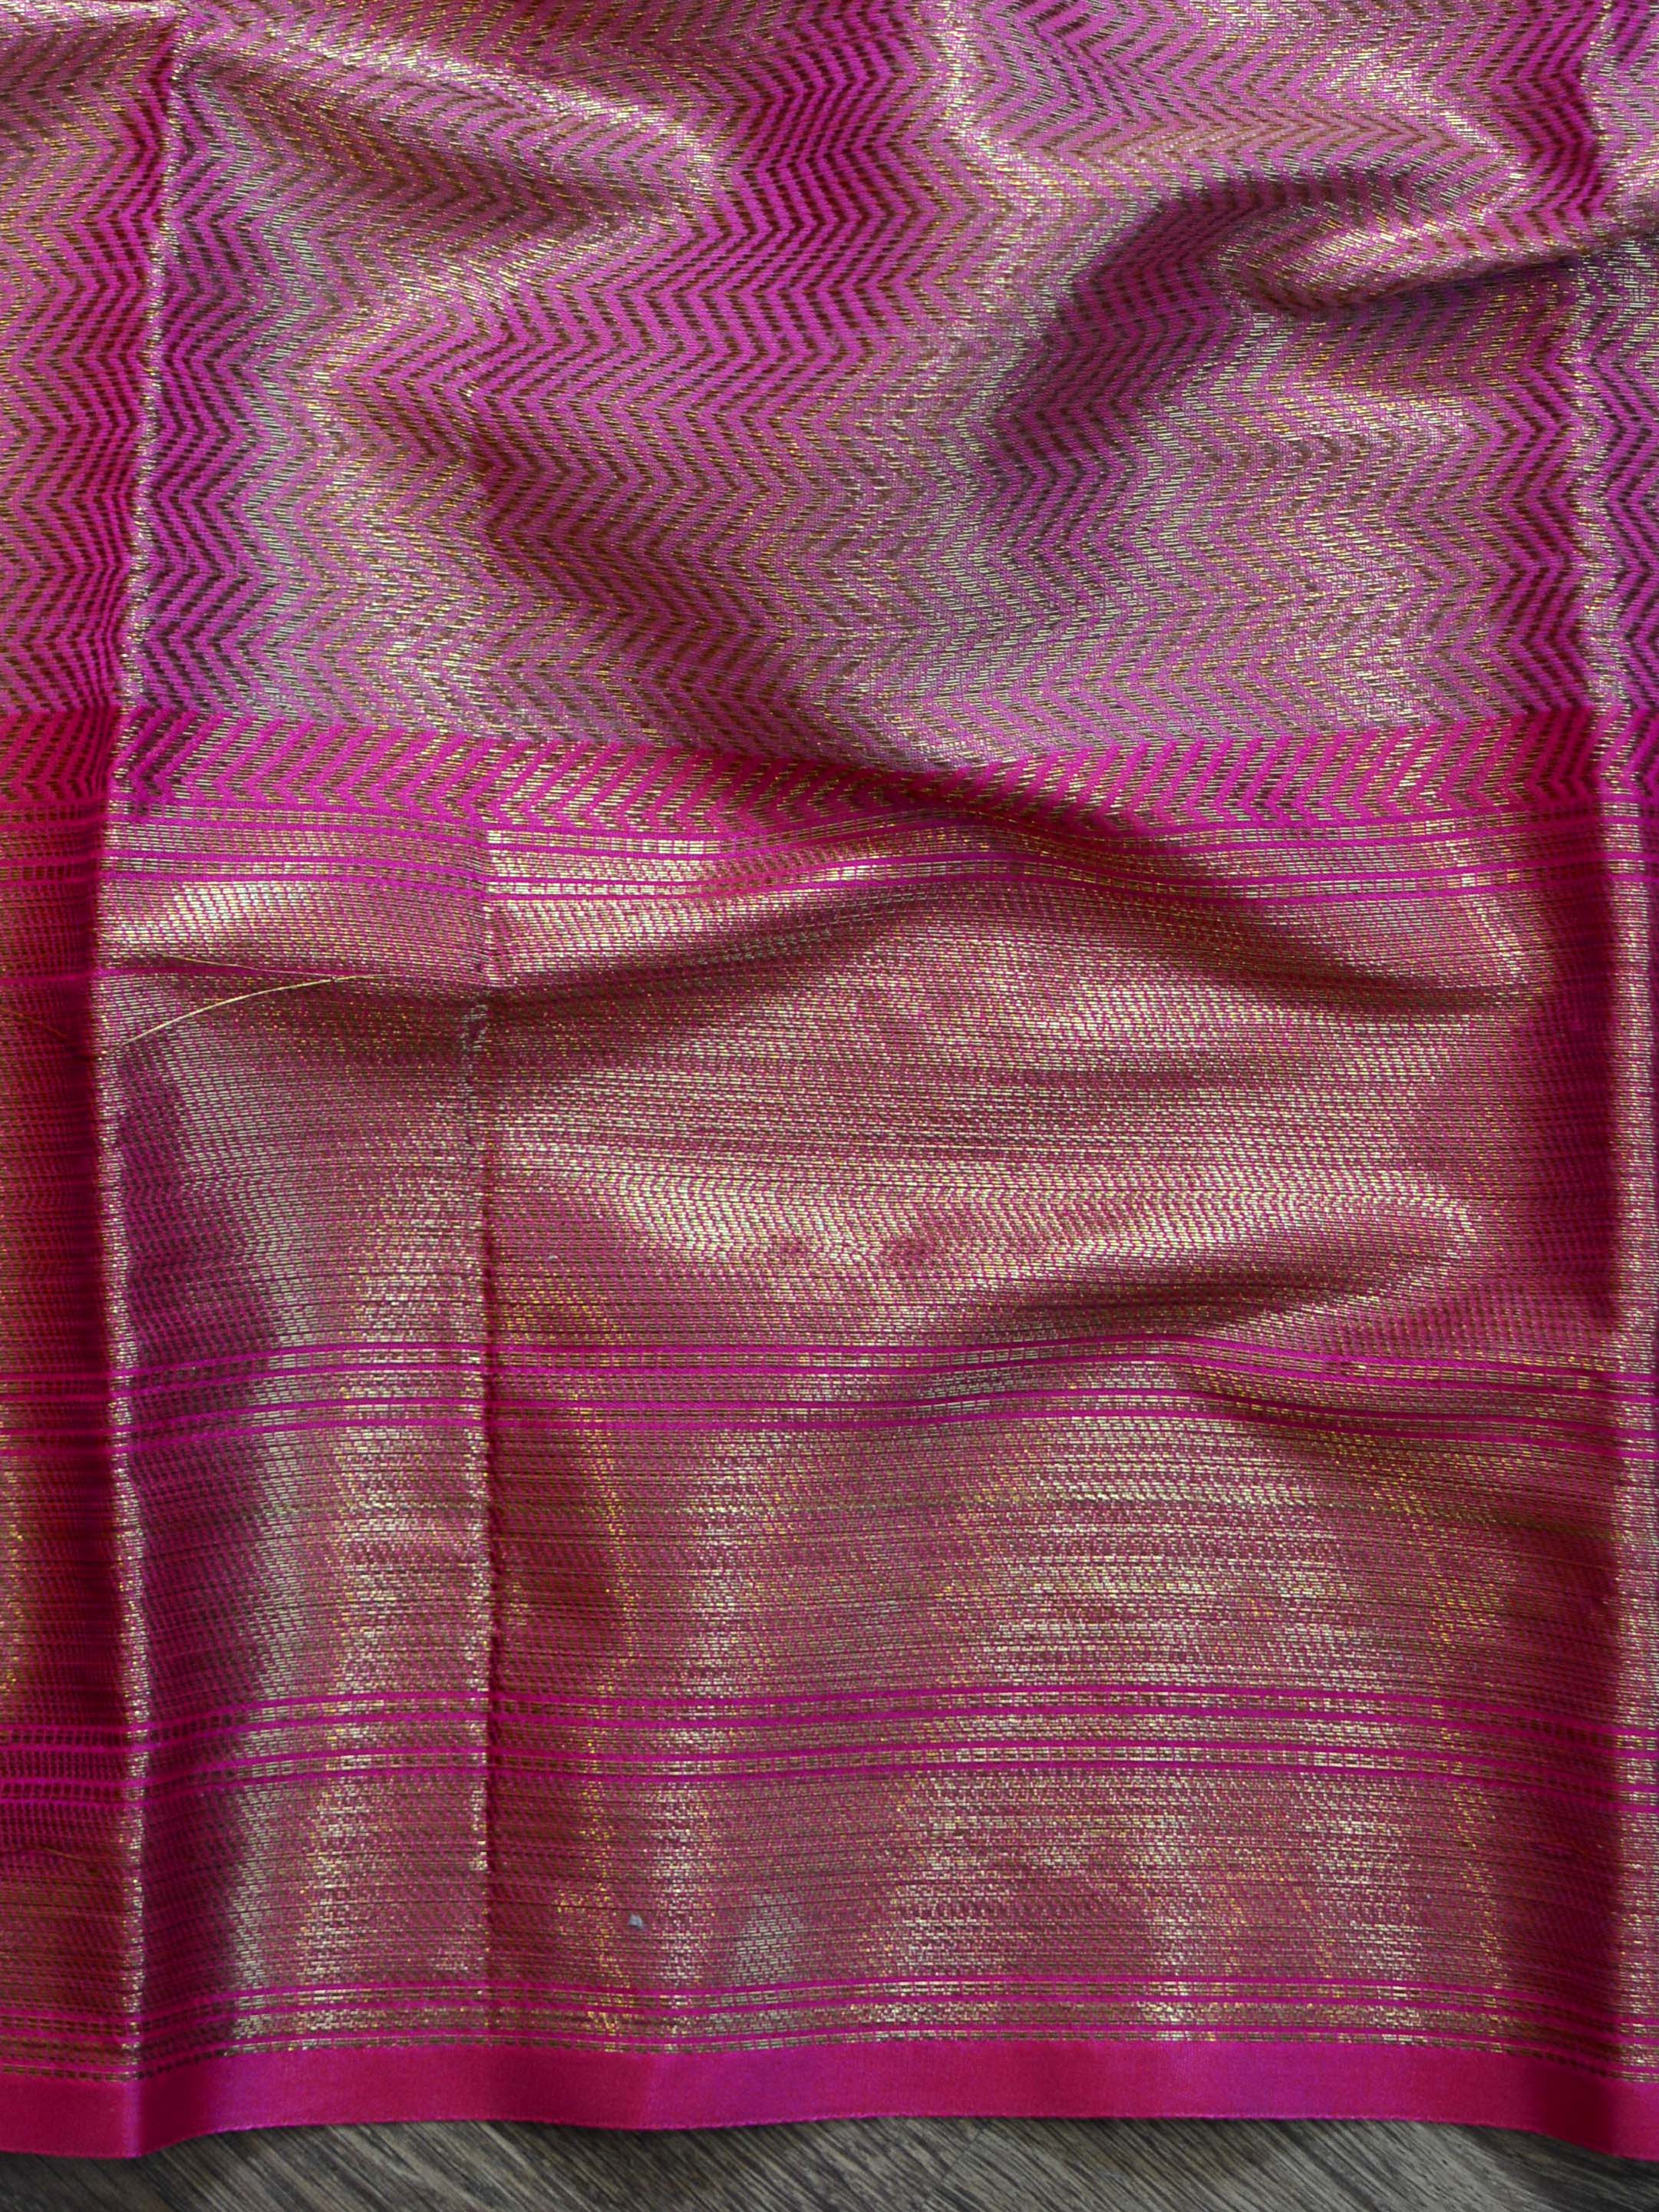 Banarasee Tissue Saree With Antique Zari Zig-Zag Design- Gold & Pink